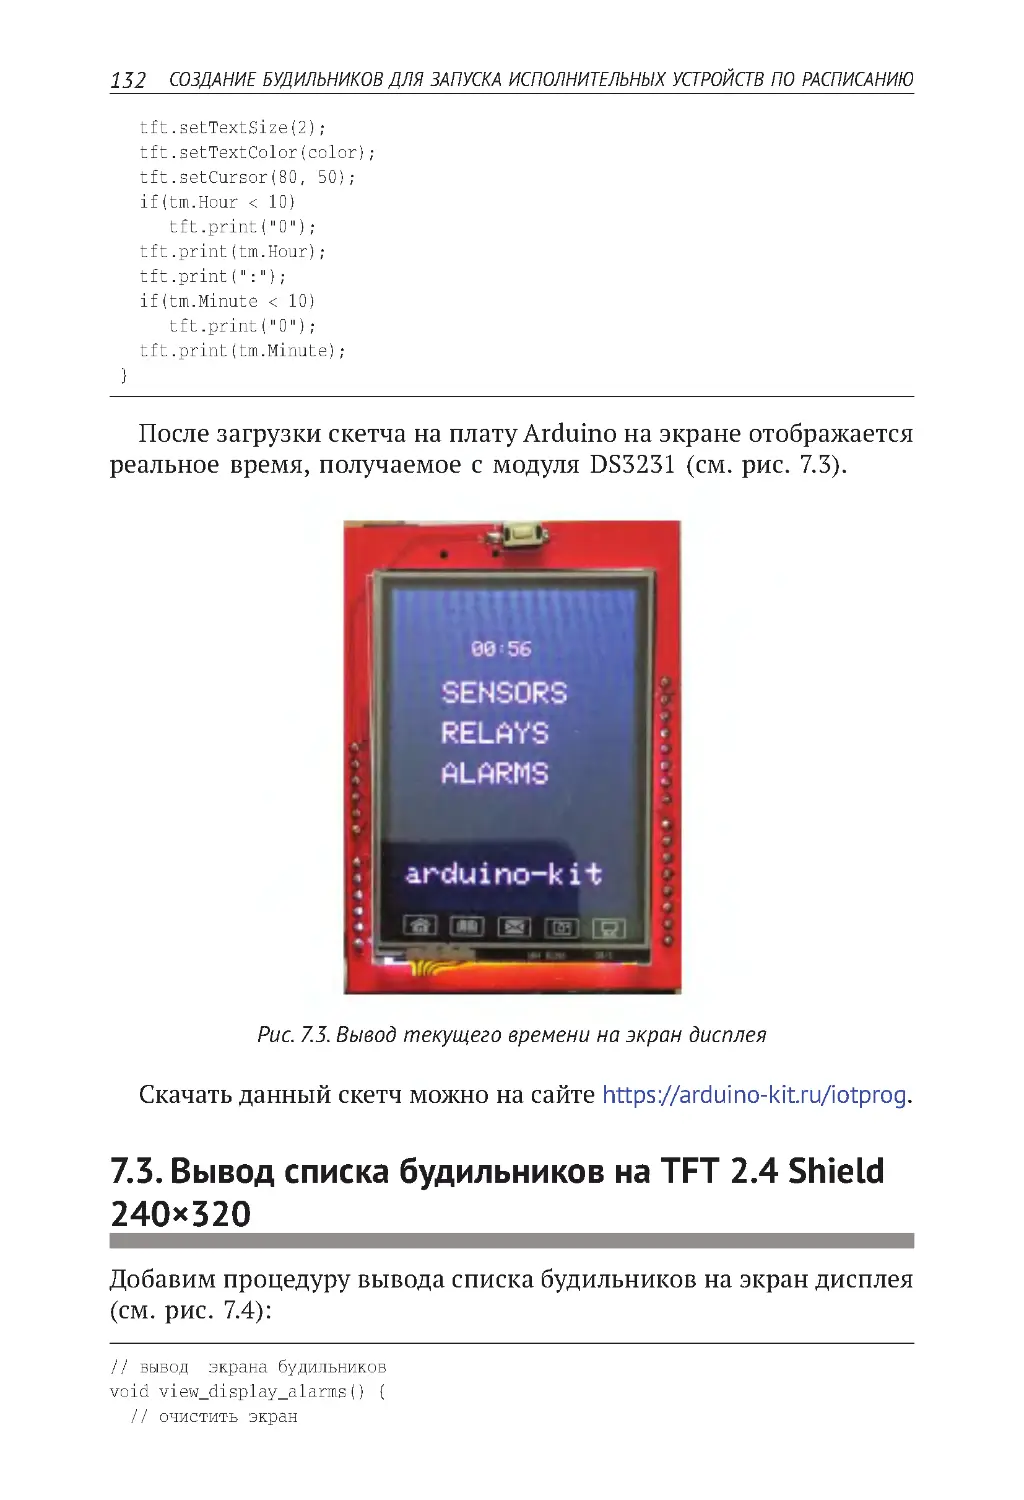 7.3. Вывод списка будильников на TFT 2.4 Shield 240×320